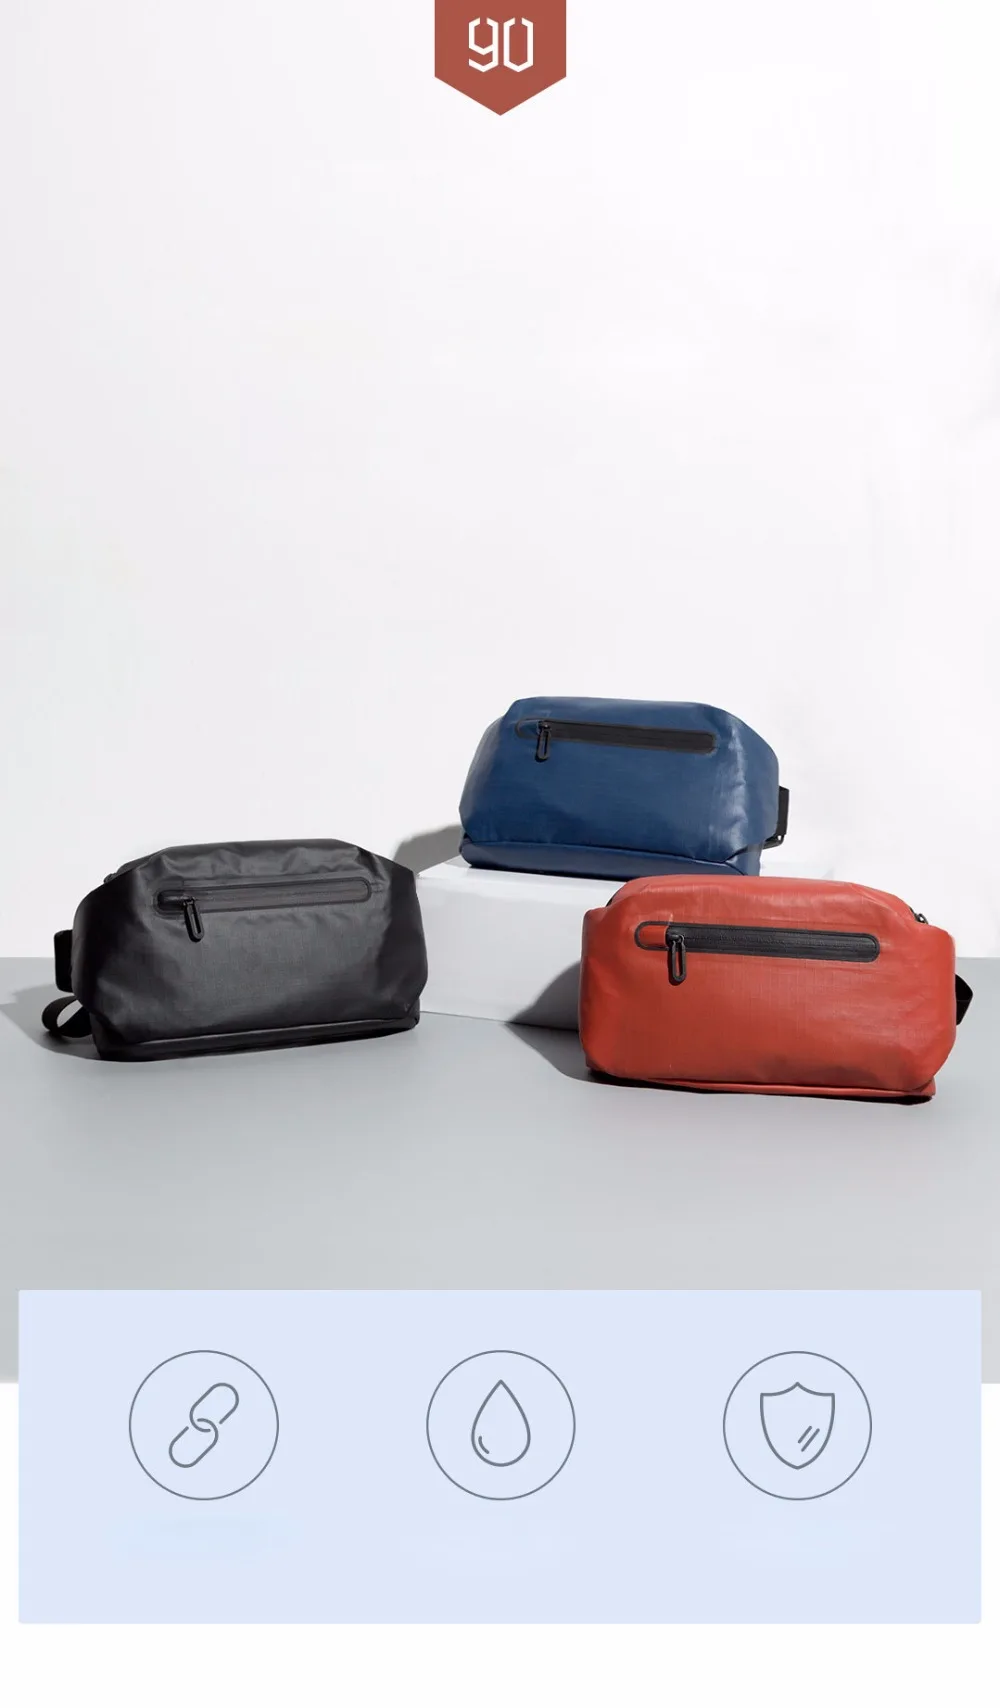 xiaomi mijia, 90 очков, модная карманная сумка, рюкзак, поясная сумка, водонепроницаемый, 2 вида отрицательных способов, предупреждающая световая панель